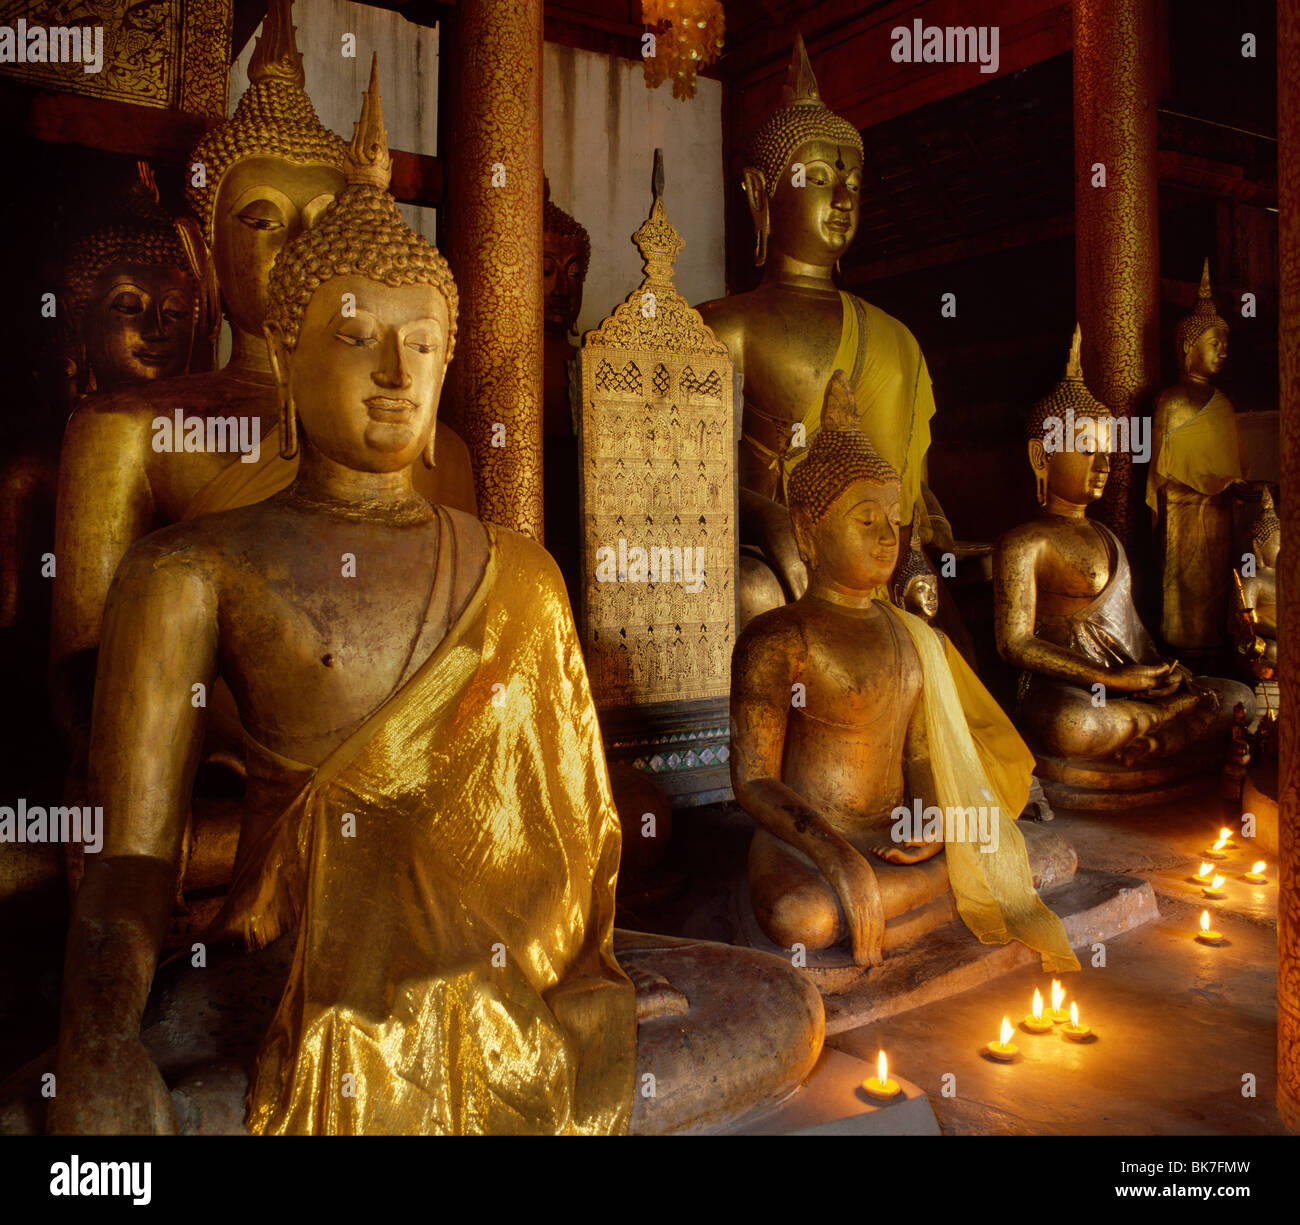 Colección de imágenes de Lanna del siglo XV y comienzos de Ayutthaya imágenes conservadas en el Wat Chiang Man, Chiang Mai, Tailandia Foto de stock